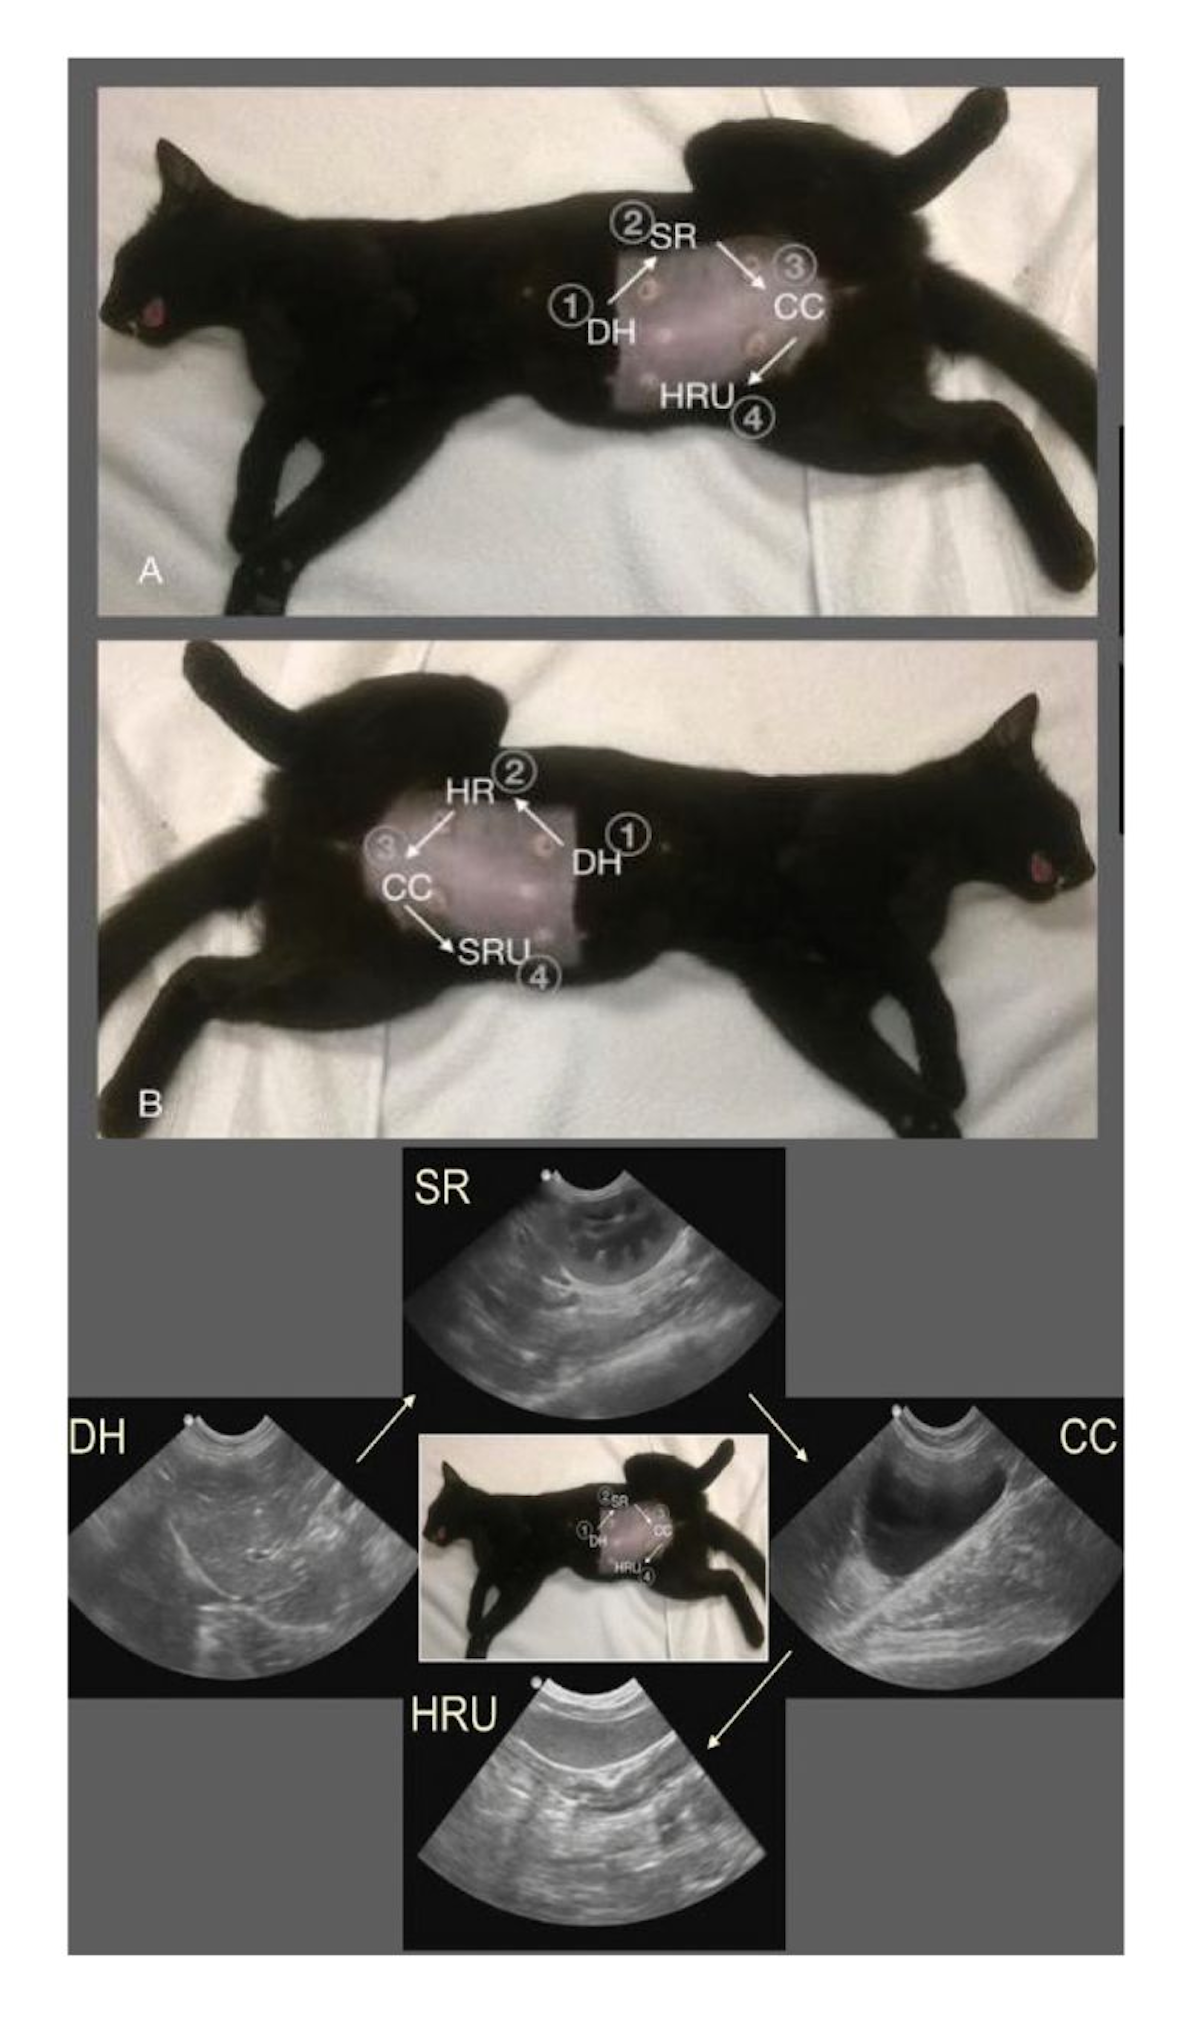 Projeções AFAST em um gato em decúbito lateral (a) direito e (b) esquerdo. O paciente foi sedado para a colocação de tubo (sonda) endotraqueal, como preparação para uma ovário-histerectomia eletiva. Nos exames ultrassonográficos, o gato costuma ser mantido em estado de alerta (consciente) e o abdômen não é depilado, mas isso ajuda a ilustrar melhor os pontos de referência externos para as respectivas projeções AFAST. Alternativamente, as imagens podem ser obtidas na posição em estação, o que, além de ter um menor impacto, é mais seguro em caso de comprometimento respiratório, suspeita de instabilidade hemodinâmica ou em gatos estressados, conforme ilustrado na Figura 1.